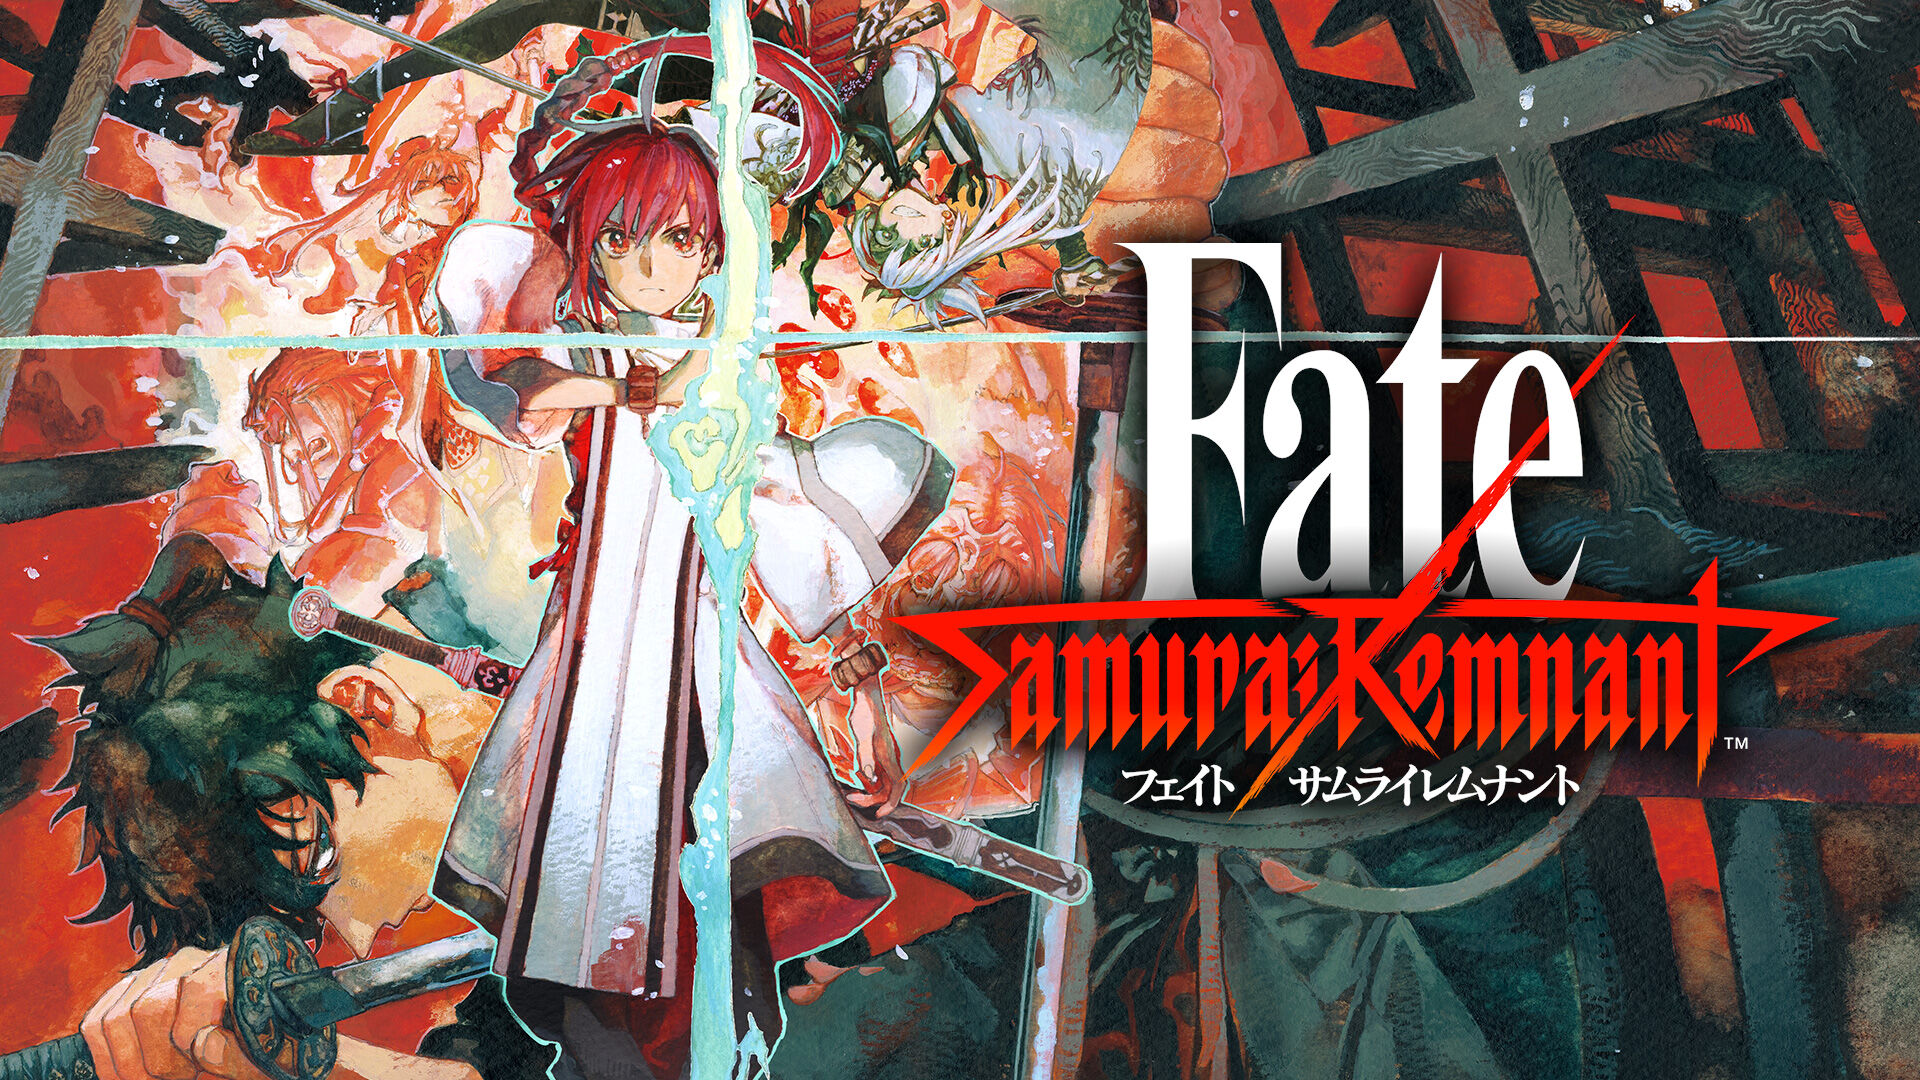 Fate/Samurai Remnant 通常版 フェイト/サムライレムナントサムライ 